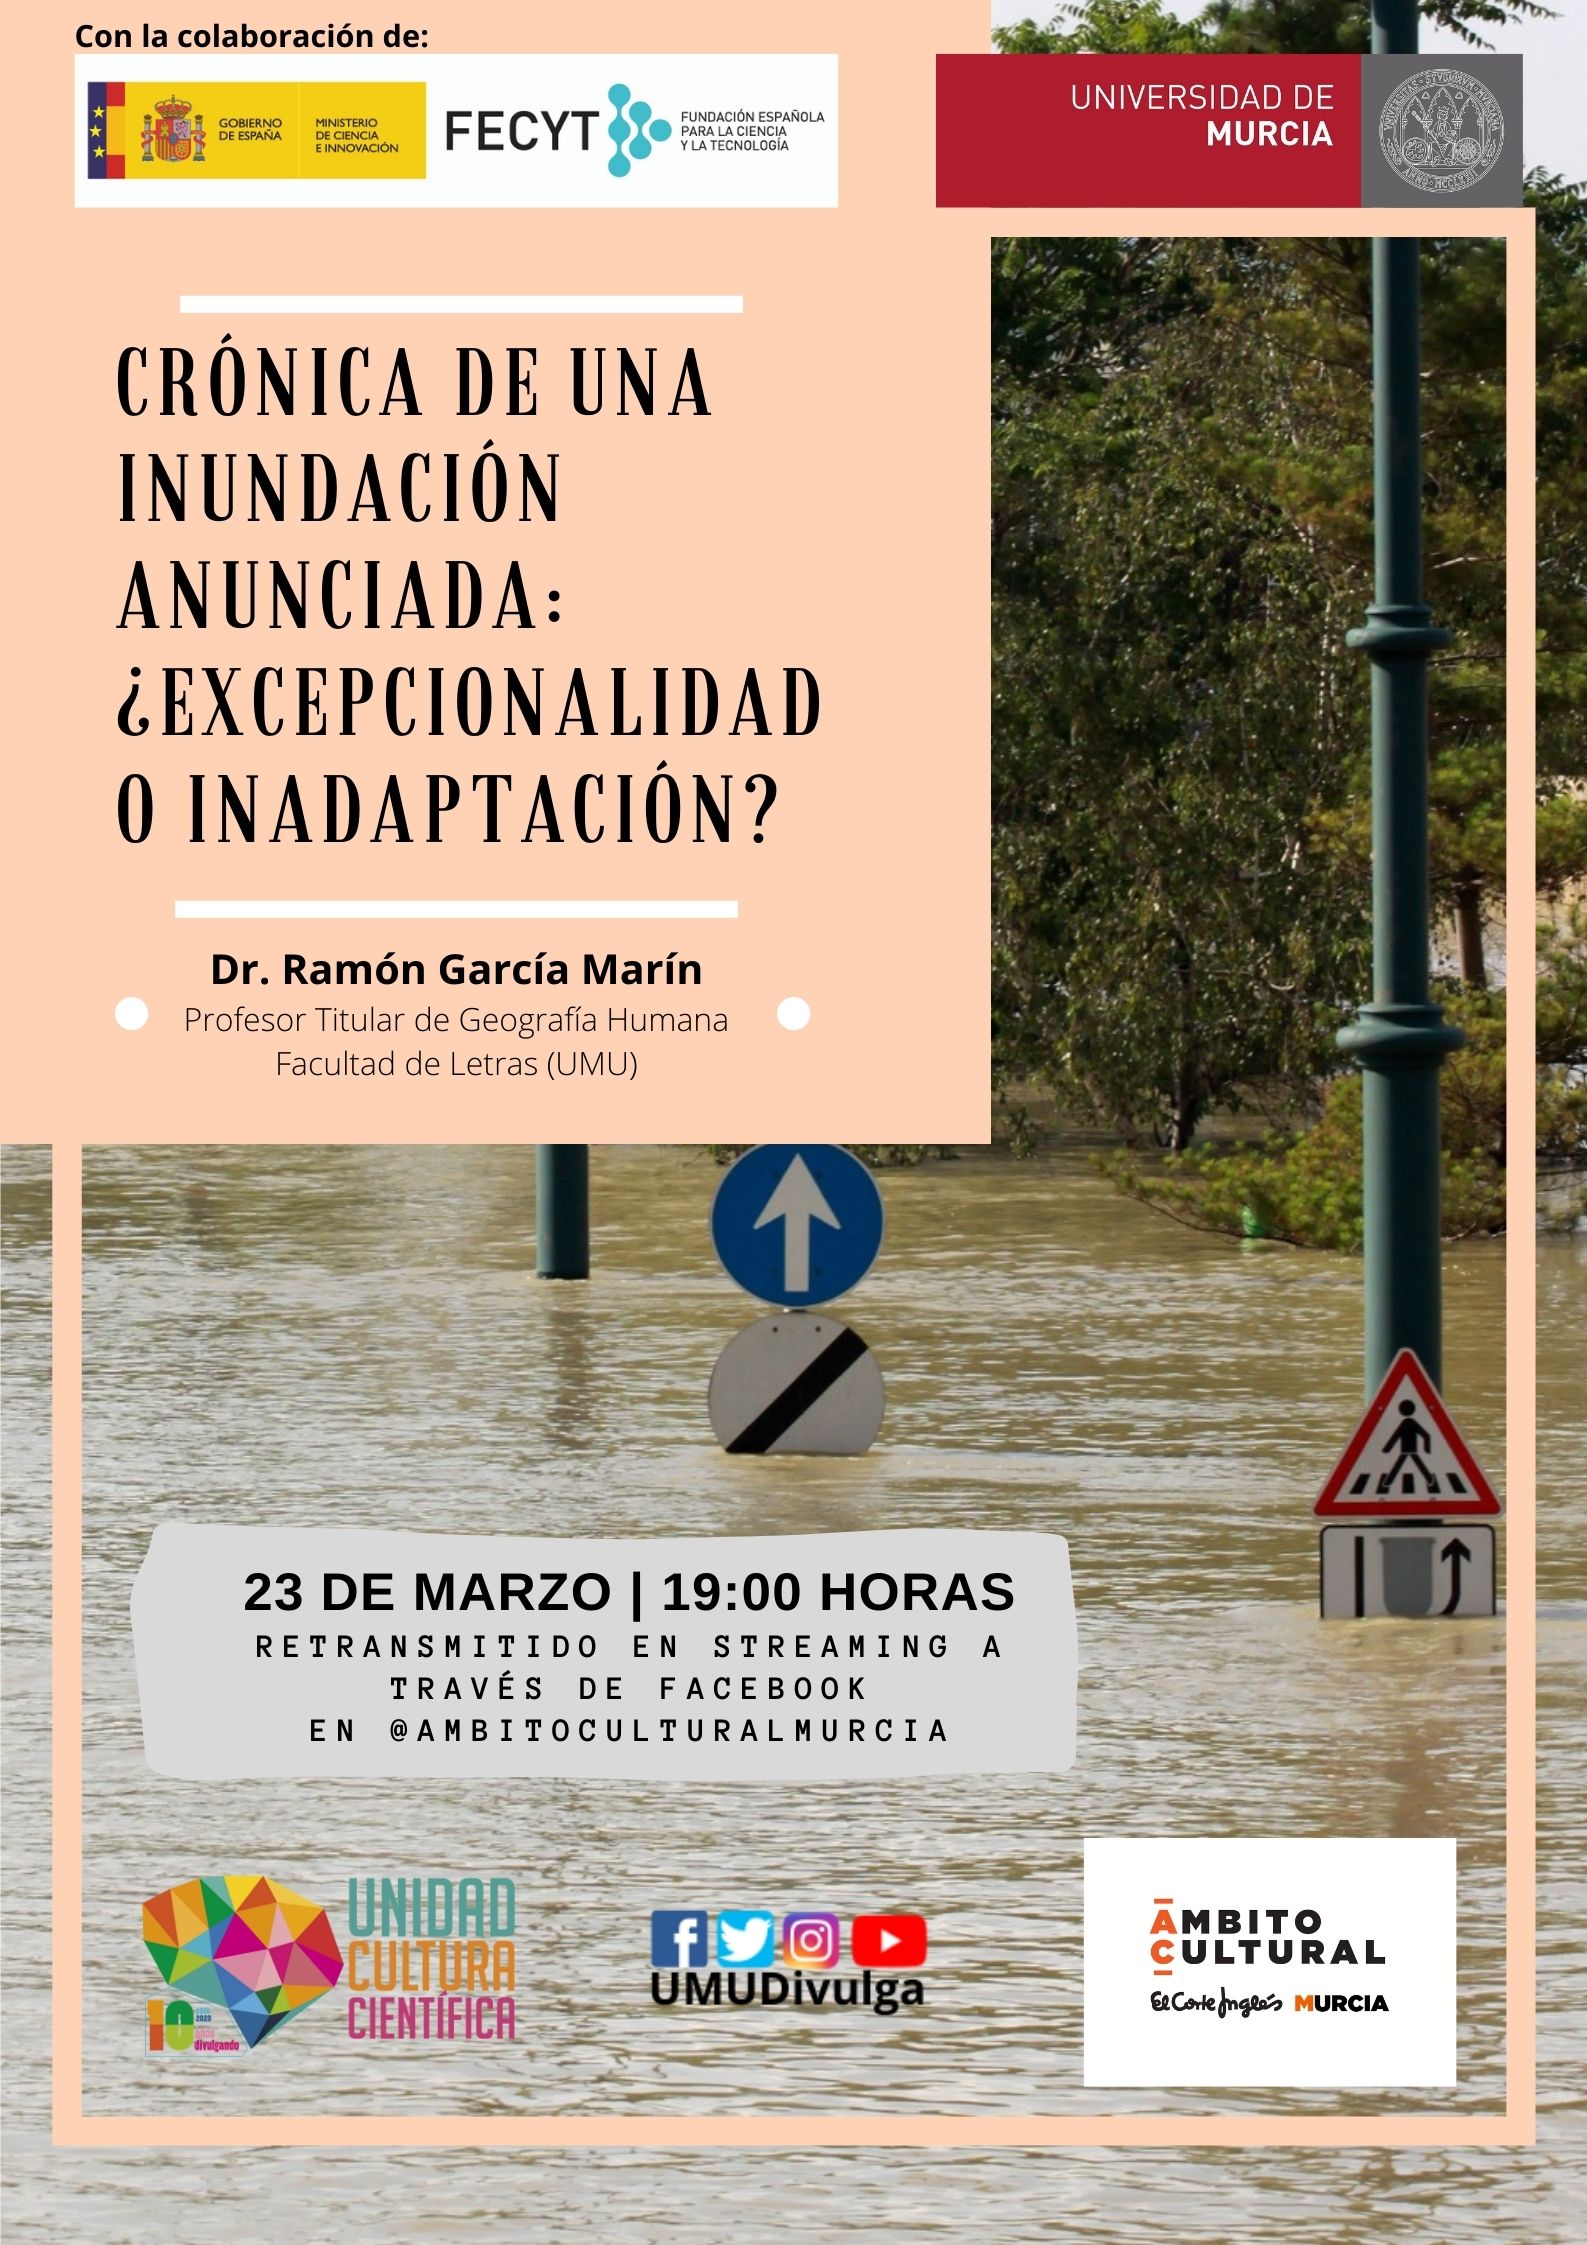 La UMU y El Corte Inglés te invitan a reflexionar sobre las últimas inundaciones de la Región